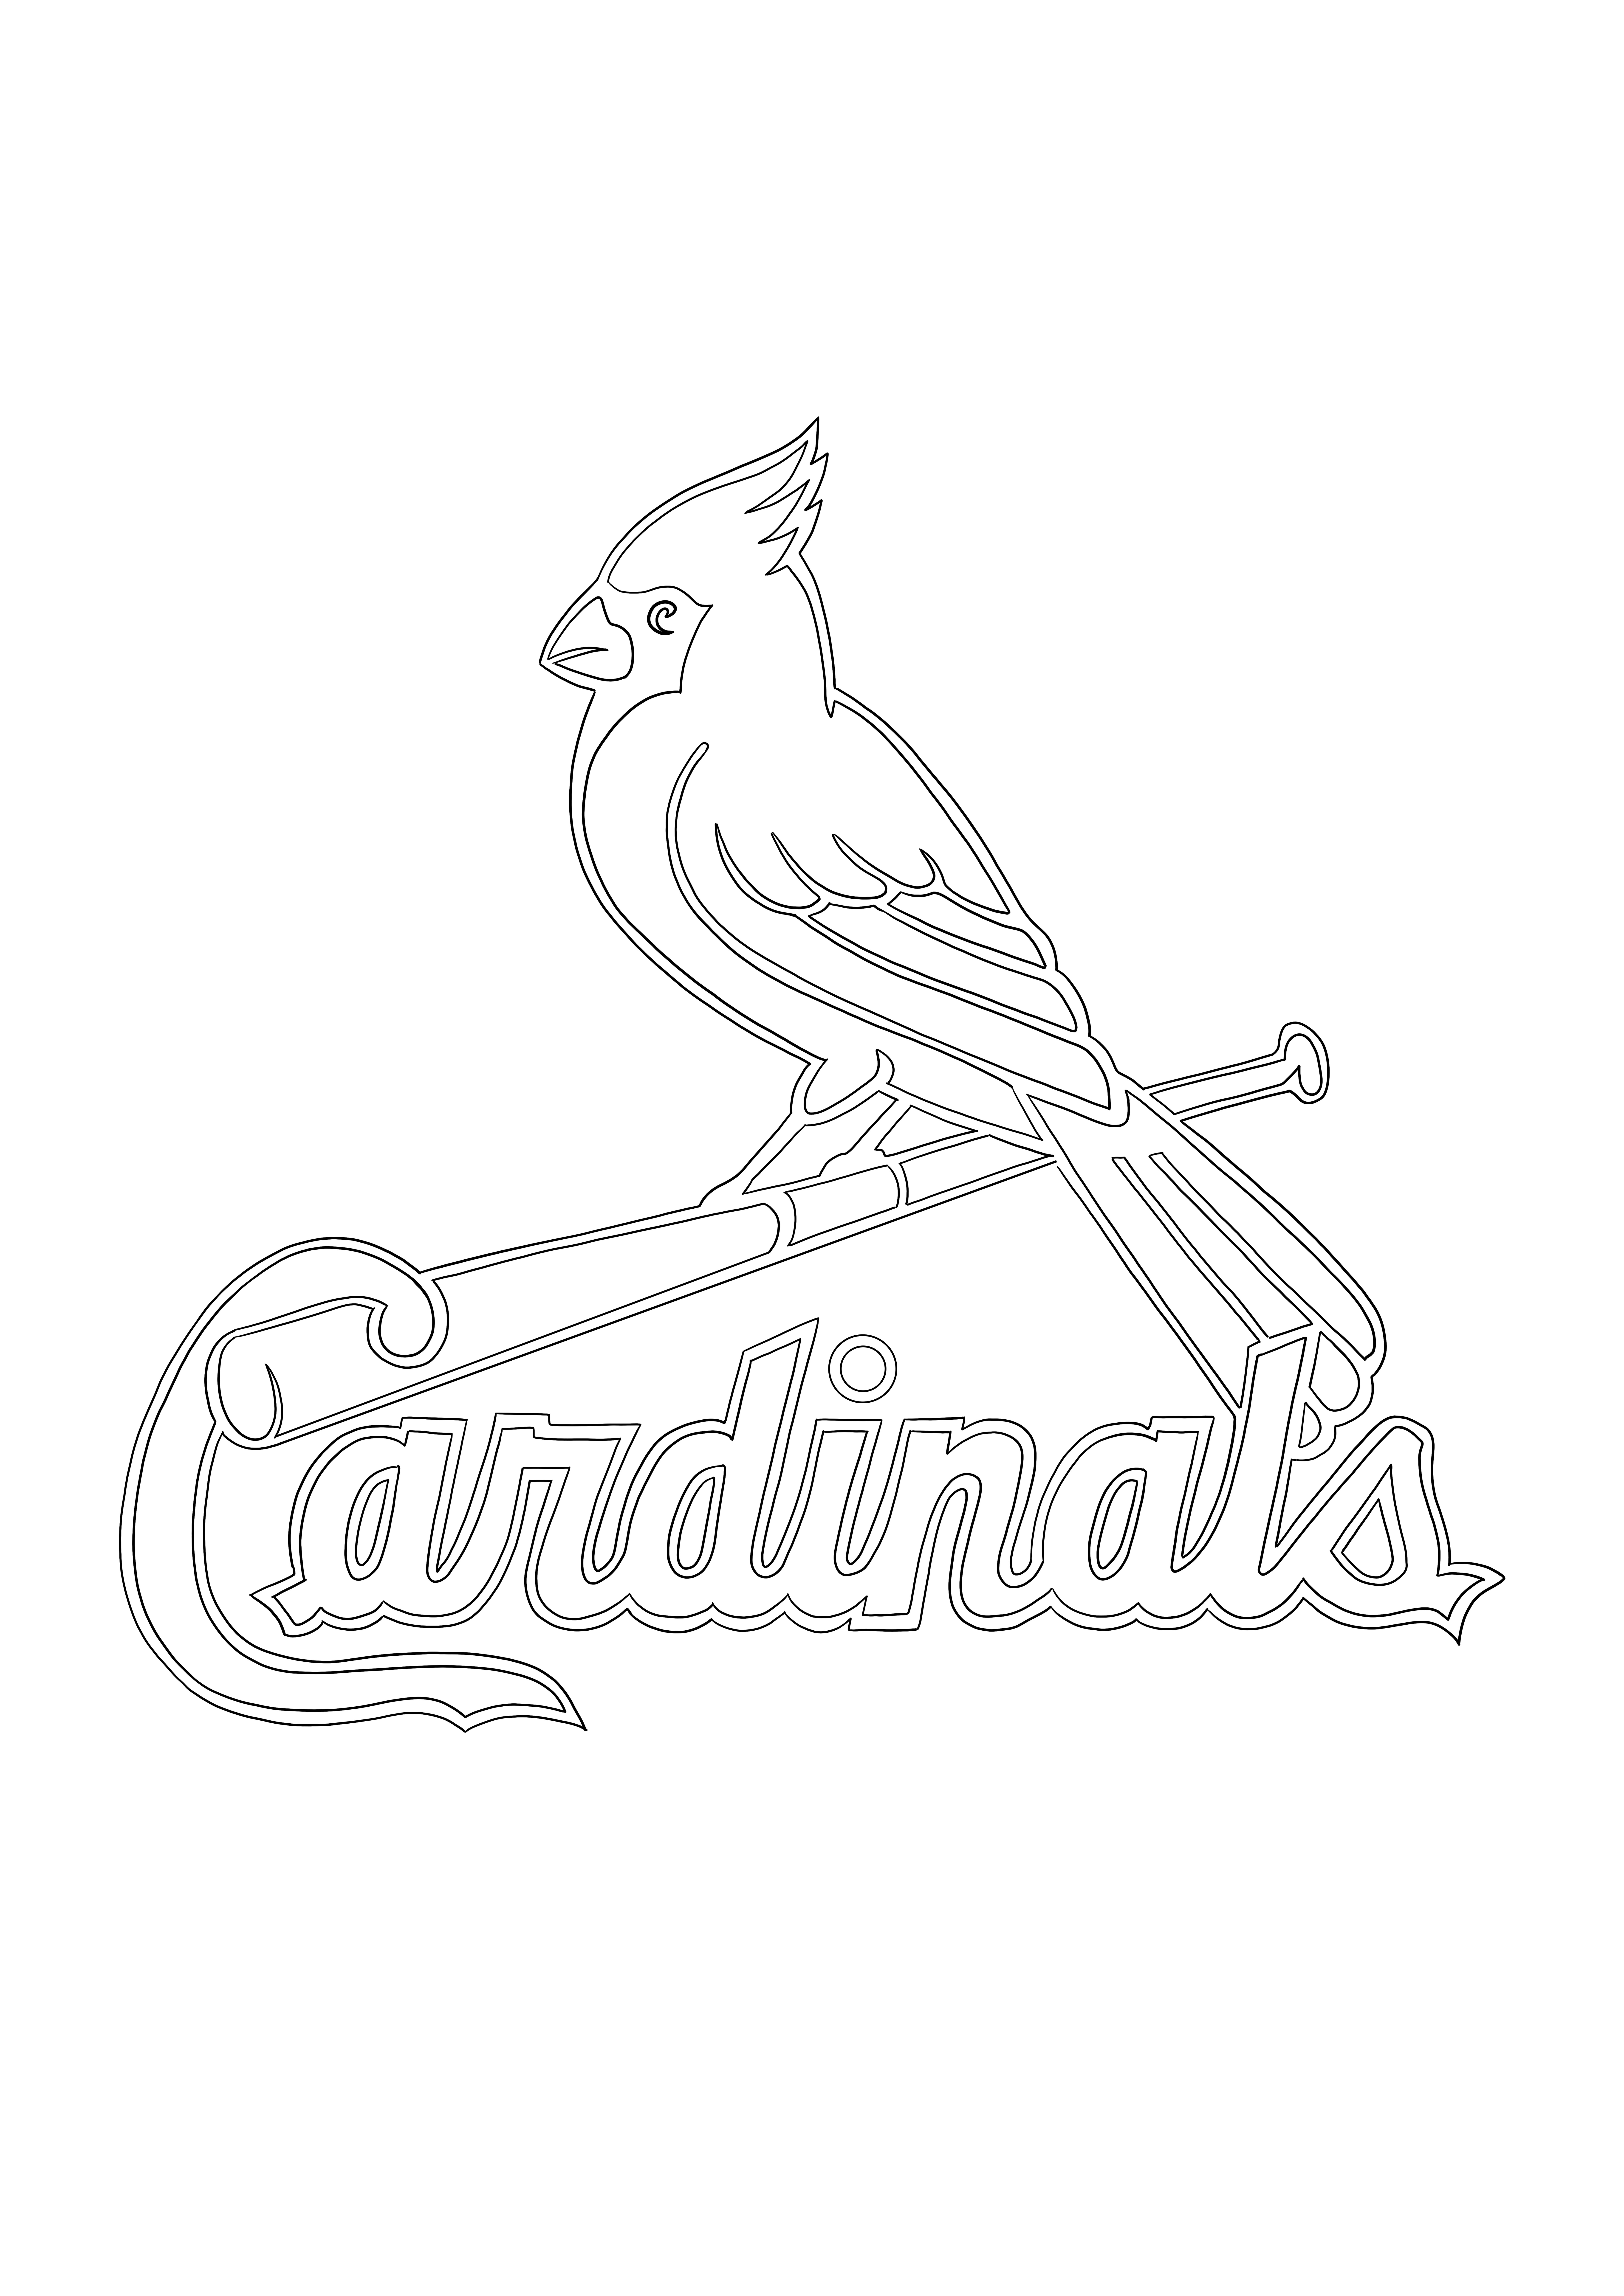 St. Louis Cardinals-logo om op te slaan voor later of te downloaden om in te kleuren kleurplaat